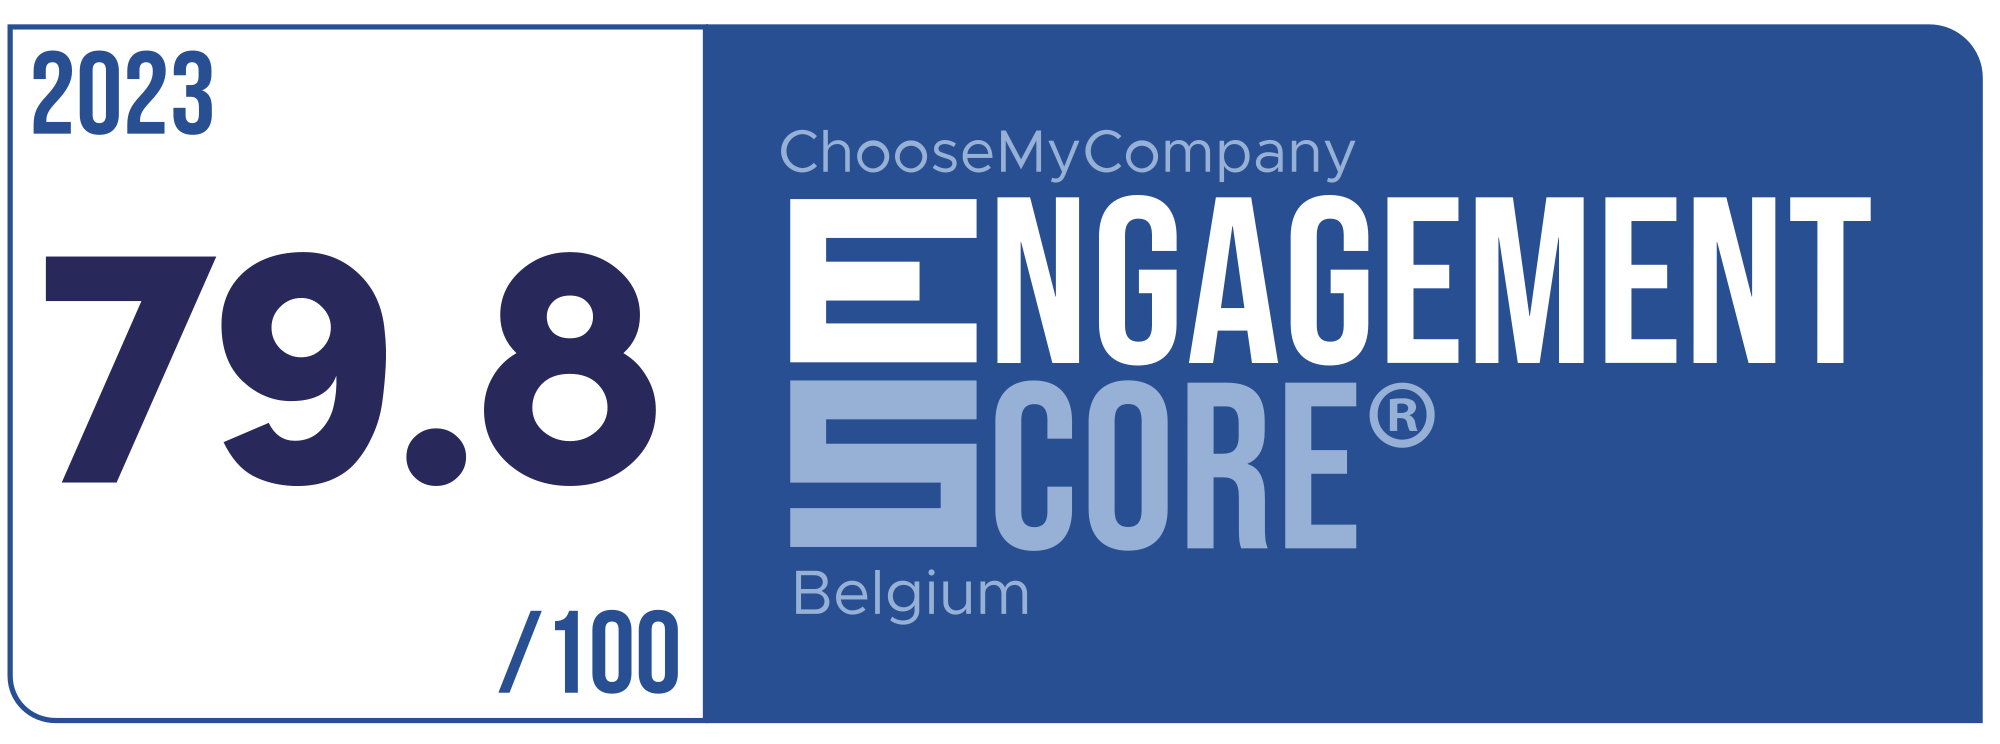 Label Engagement Score 2023 Belgium